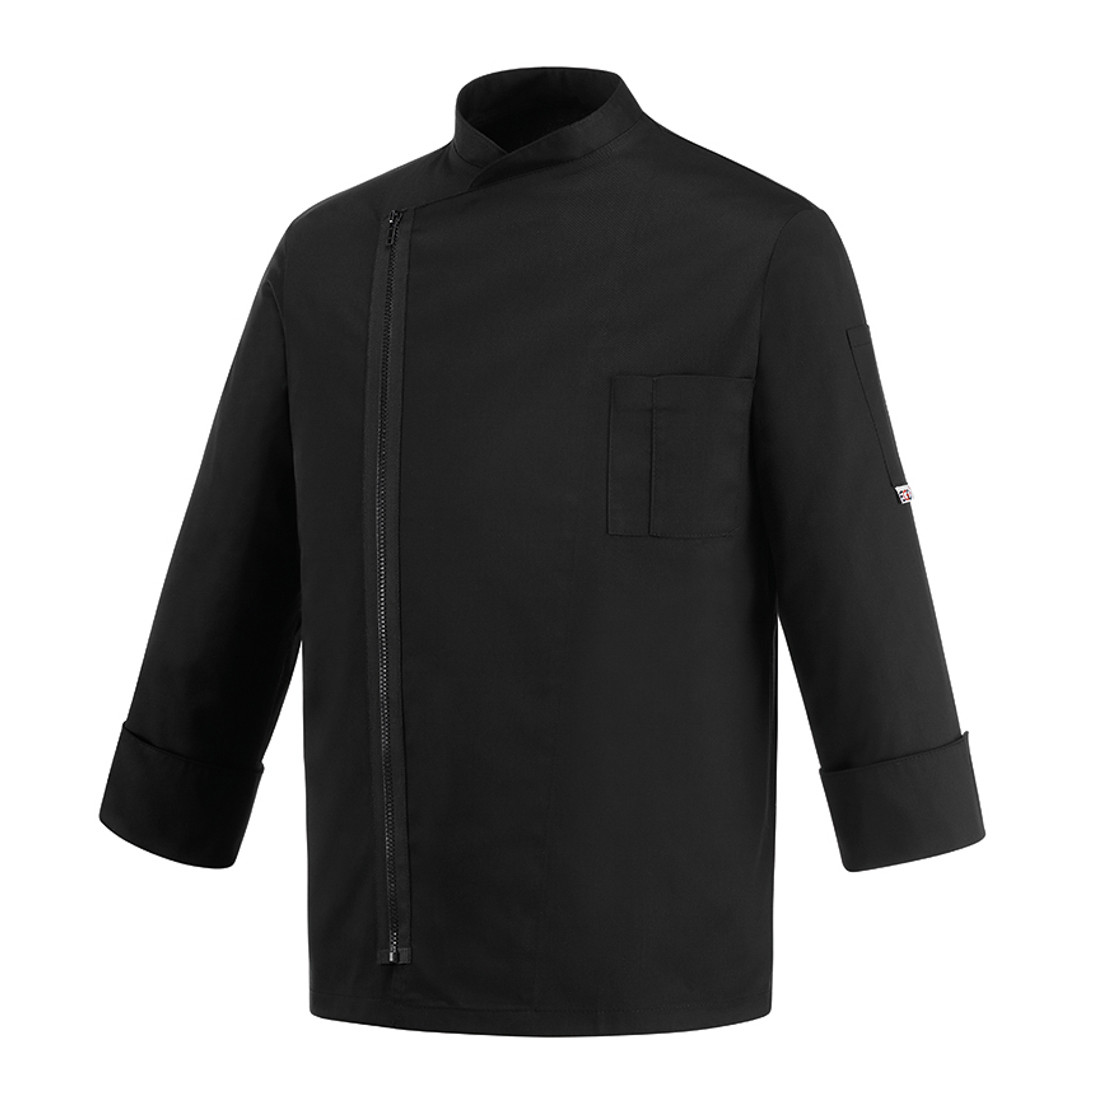 Zip Chef's Jacket - Safetywear